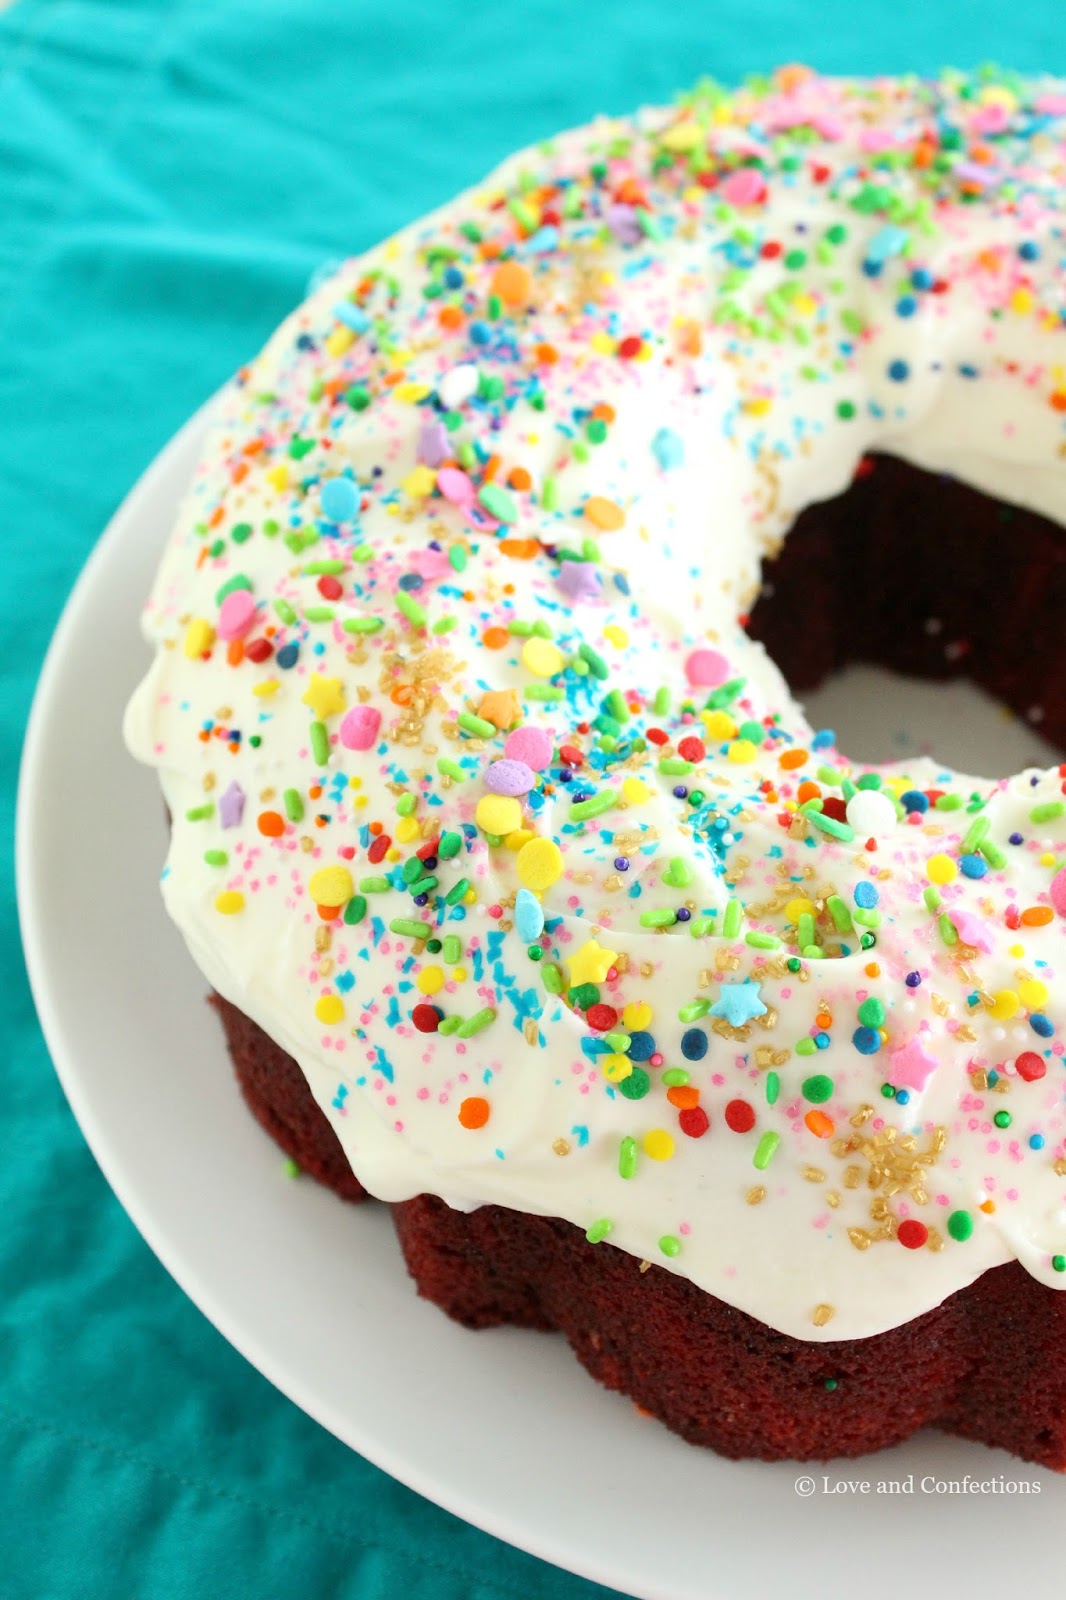 Red Velvet Cream Cheese Swirl Bundt Cake - Sprinkle Bakes